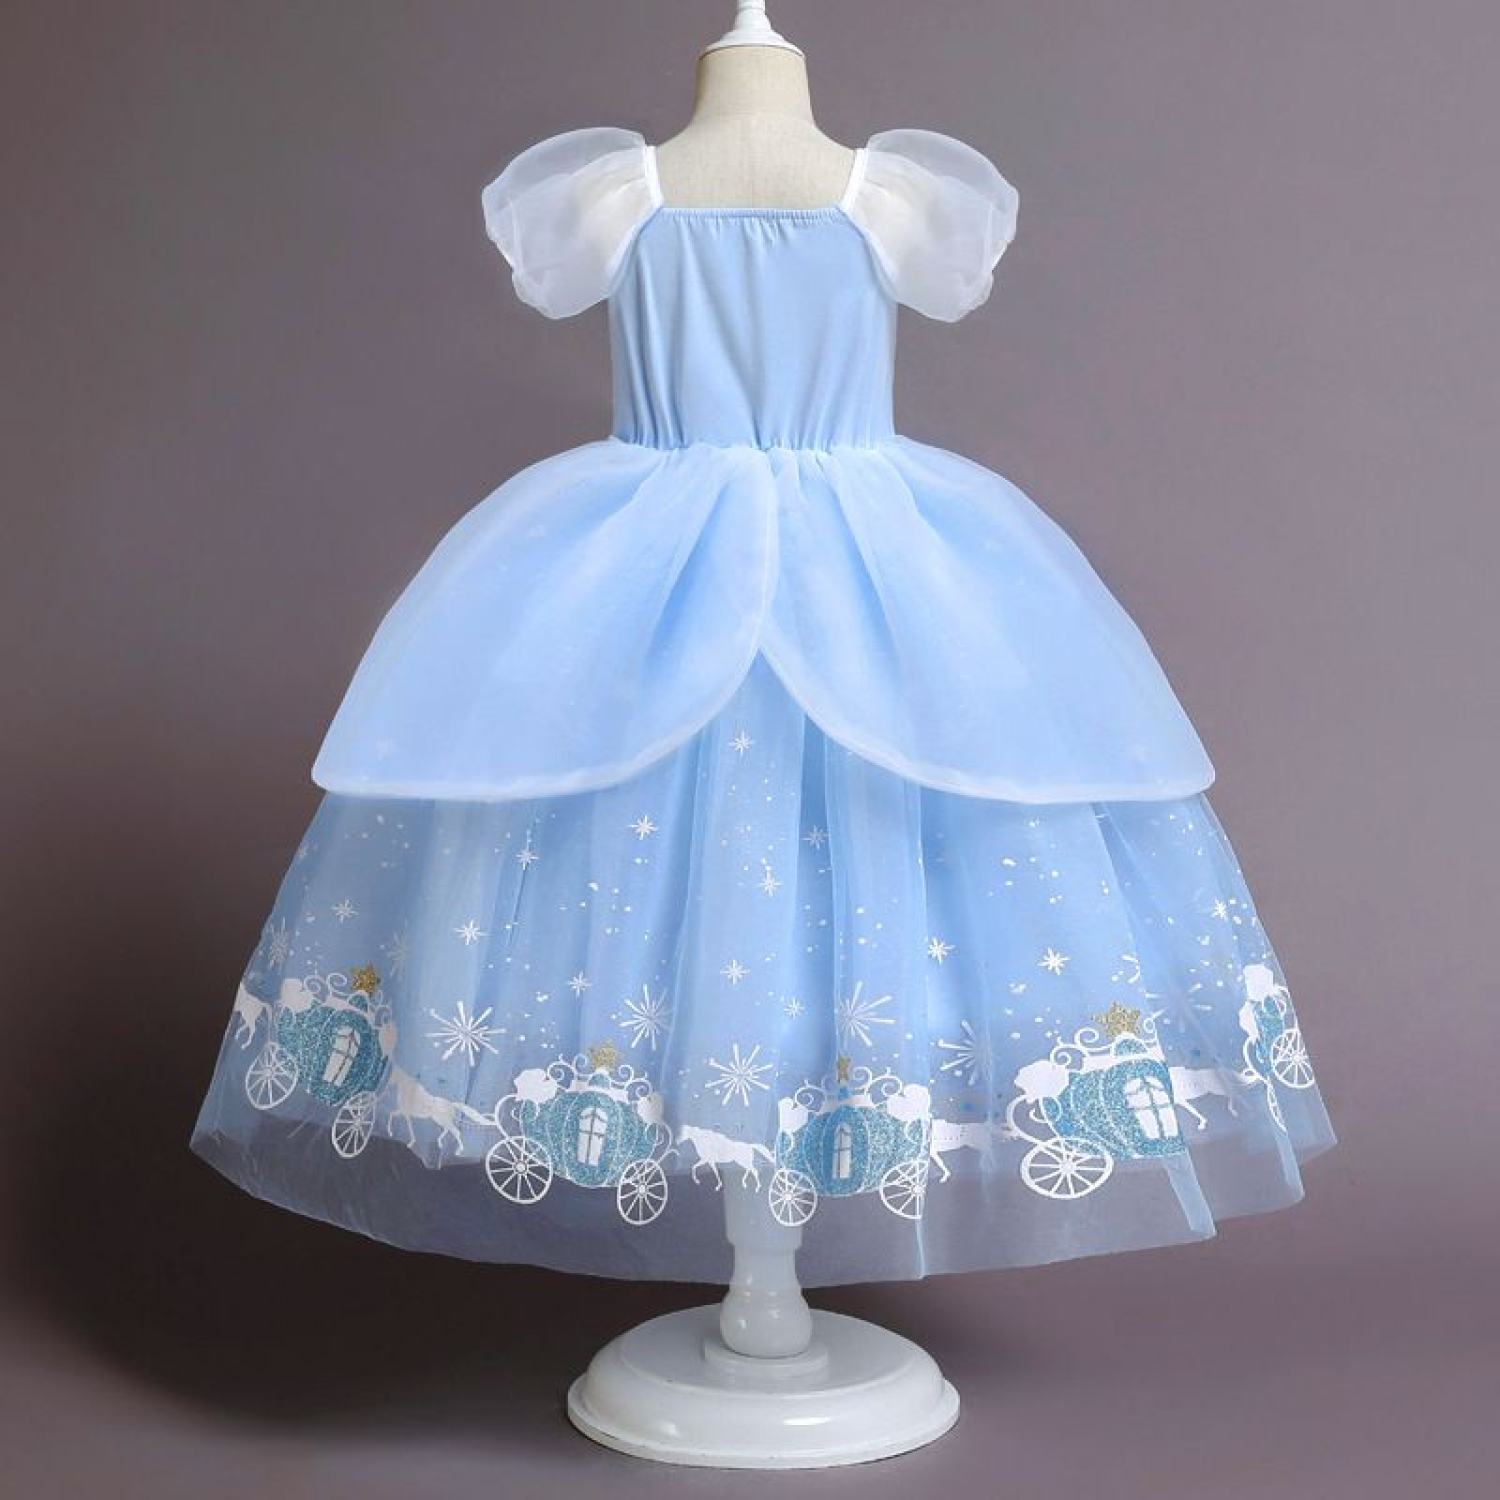 Đầm công chúa màu xanh cho bé  Vân Kim Shop